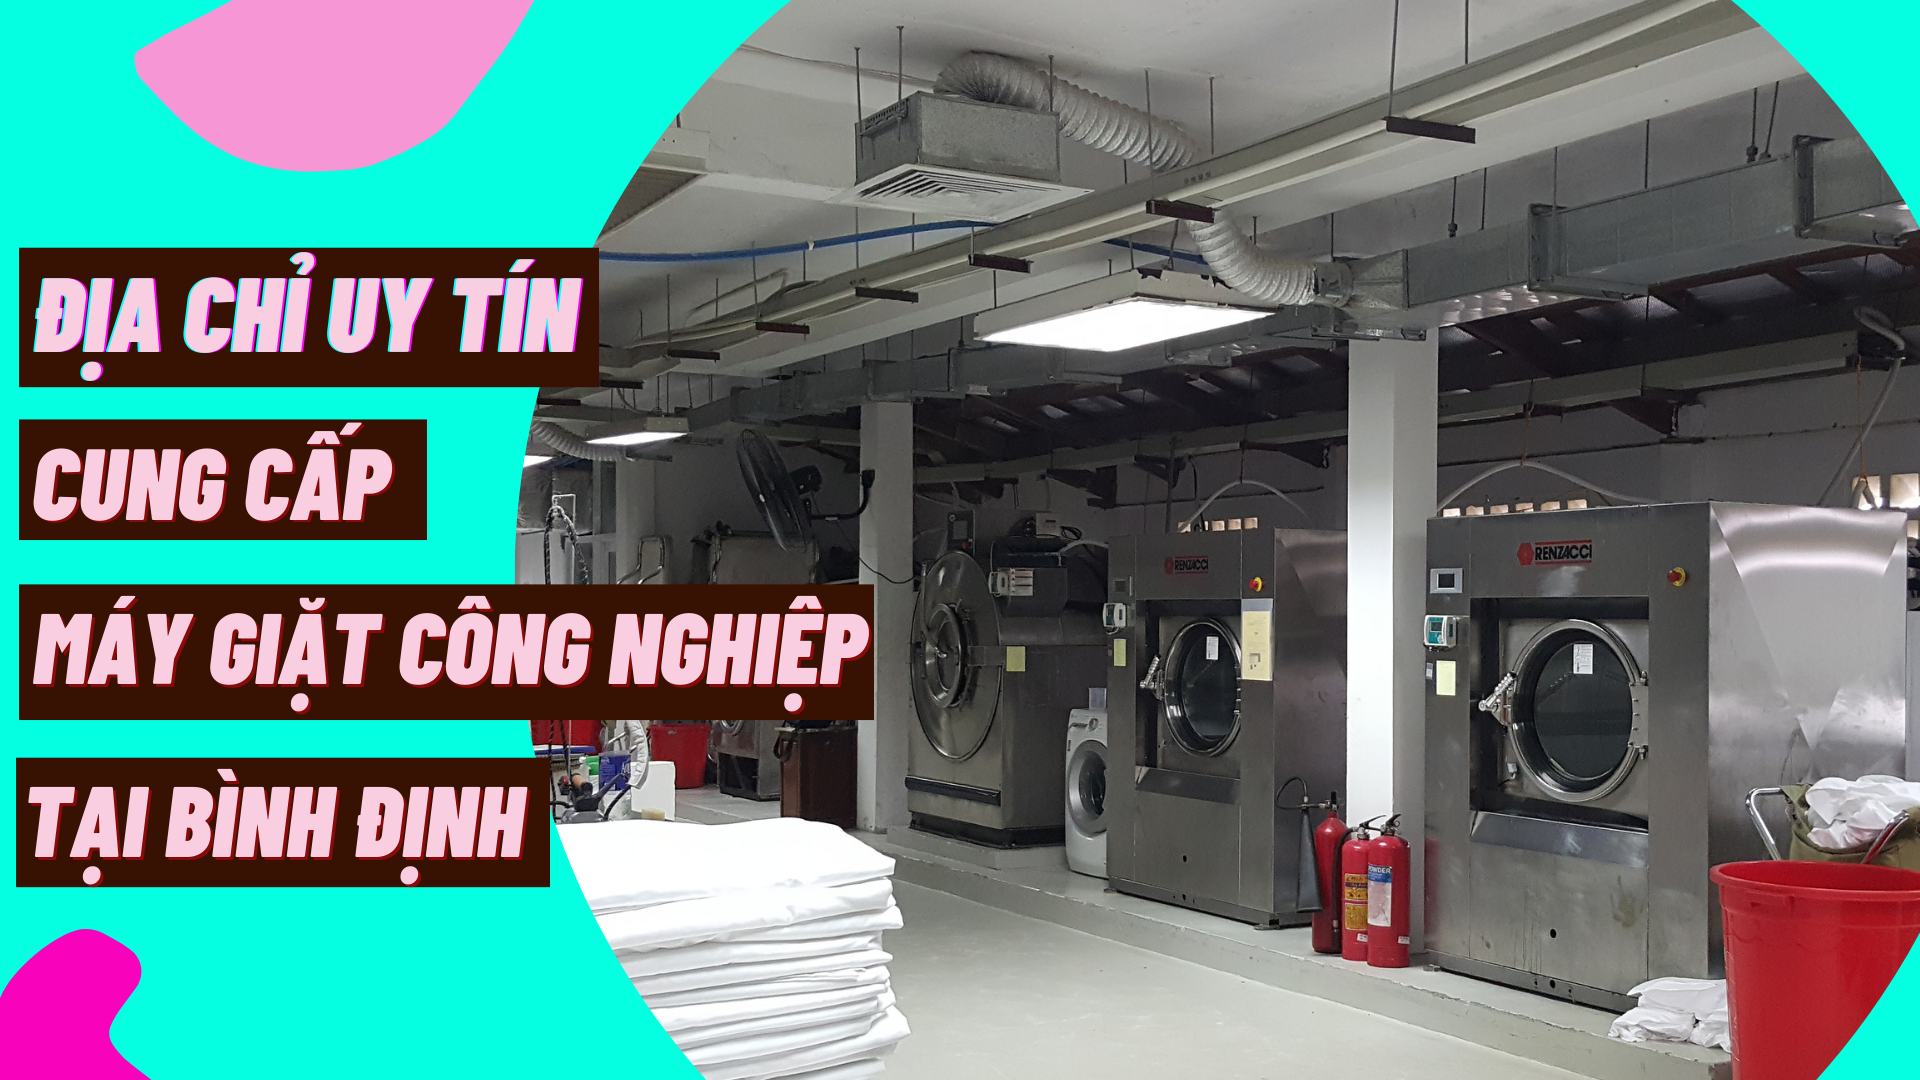 Địa chỉ uy tín cung cấp máy giặt công nghiệp tại Bình Định